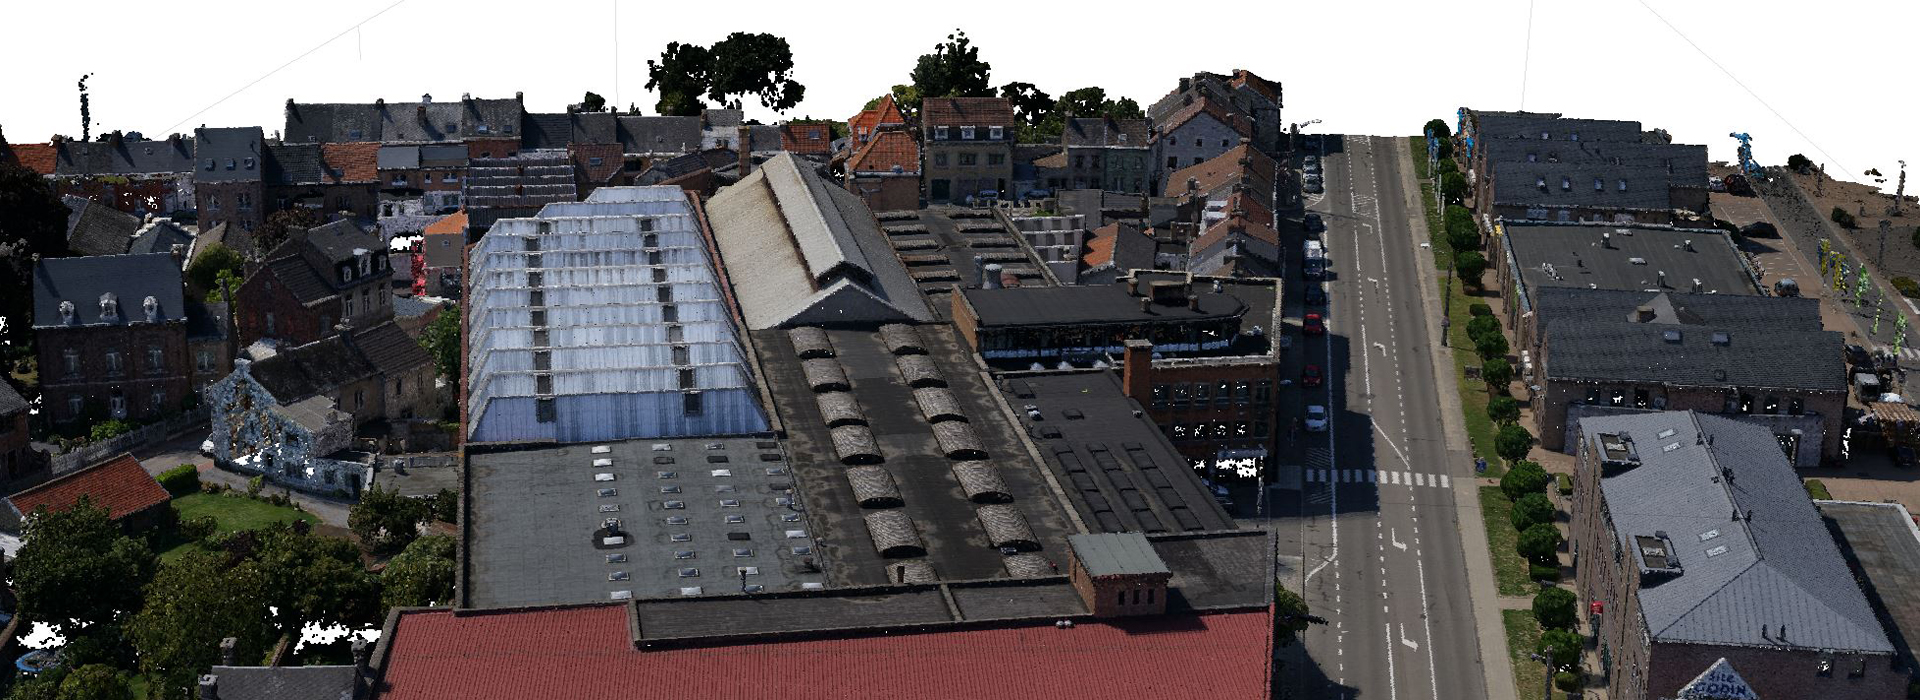 3D overzicht van een gebouwencomplex